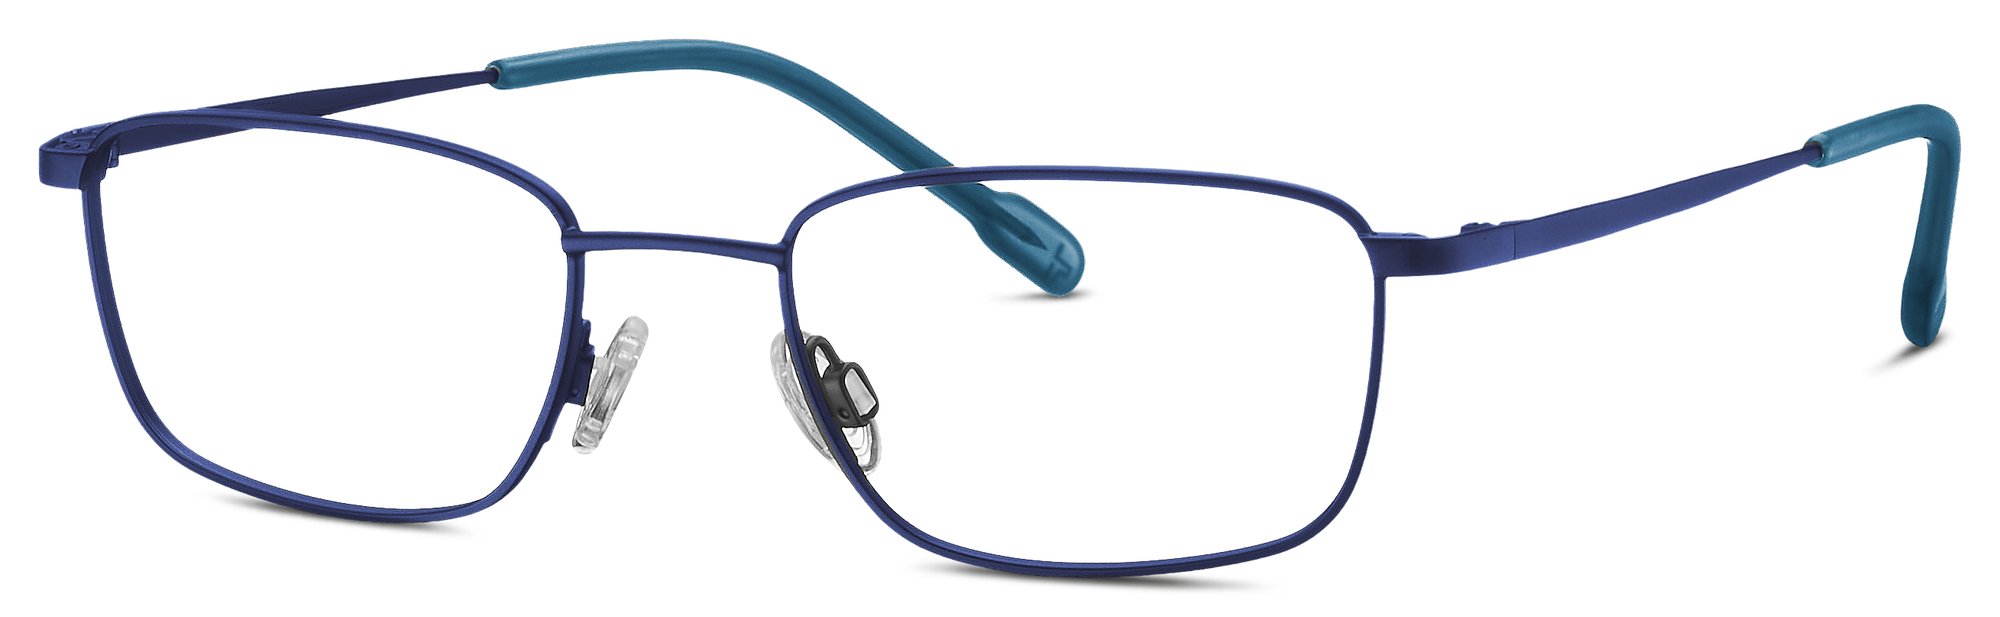 Das Bild zeigt die Korrektionsbrille 830128 77 von der Marke Titanflex Kids in blau.